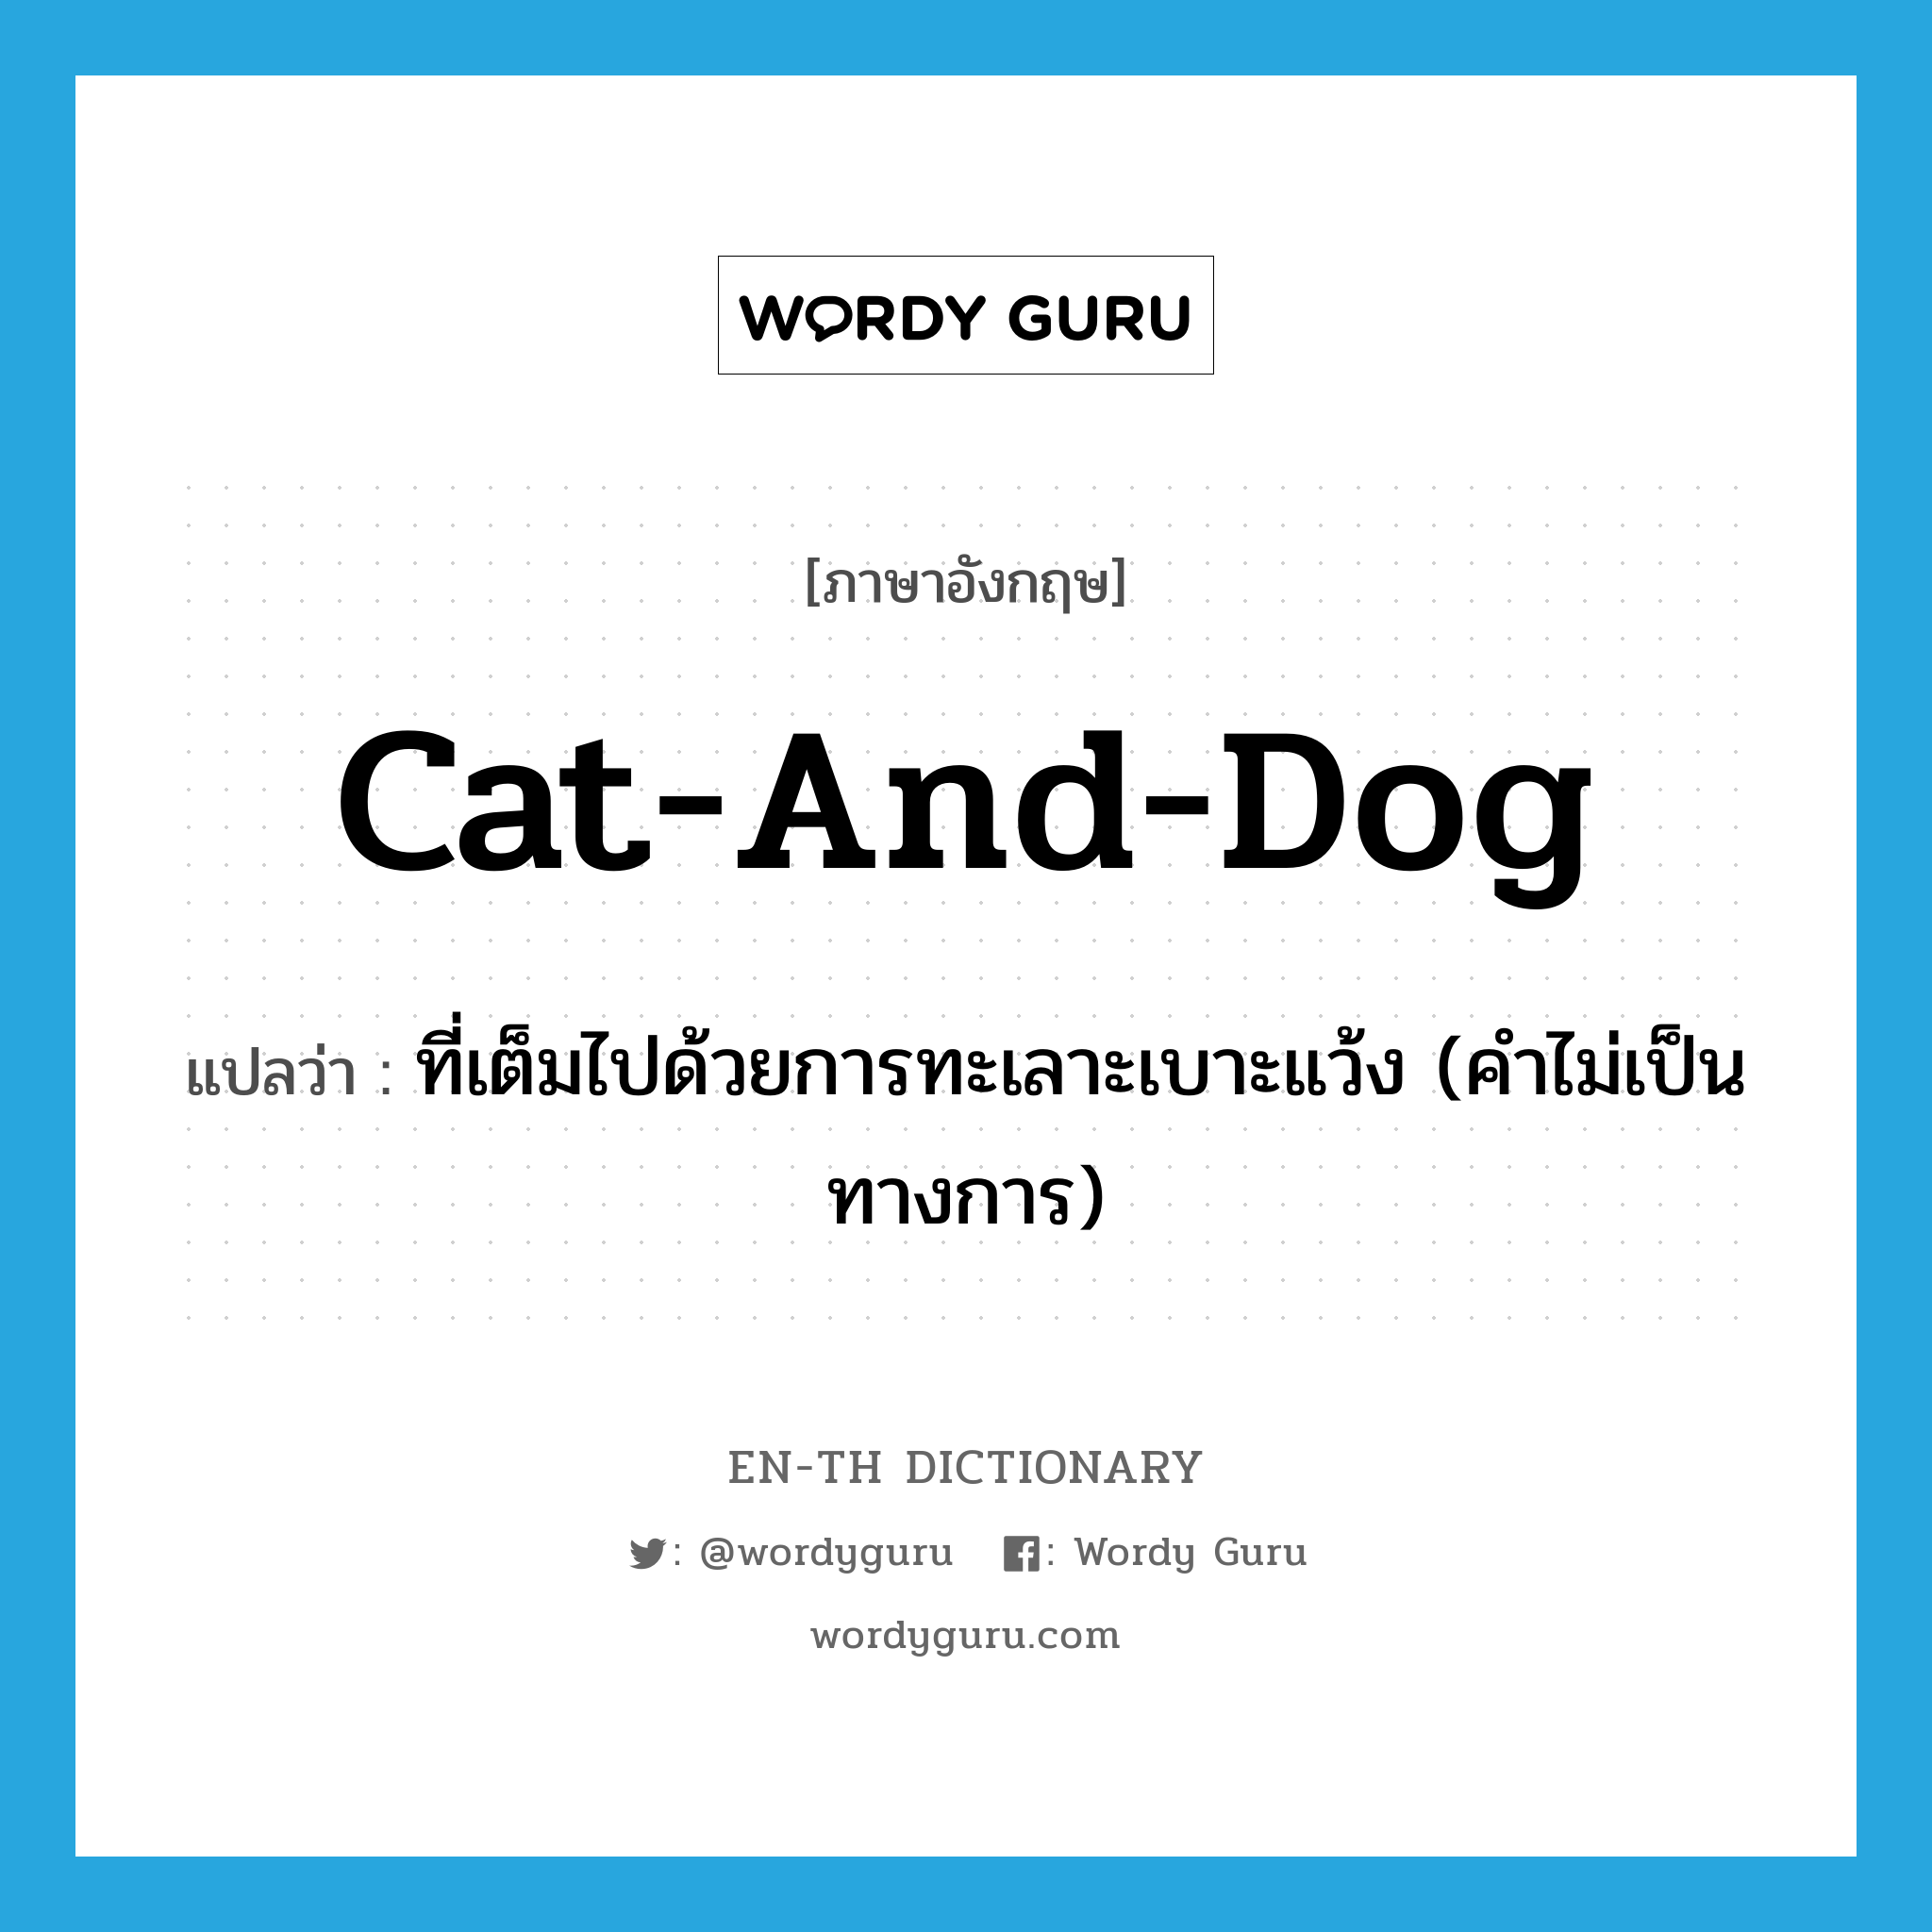 ที่เต็มไปด้วยการทะเลาะเบาะแว้ง (คำไม่เป็นทางการ) ภาษาอังกฤษ?, คำศัพท์ภาษาอังกฤษ ที่เต็มไปด้วยการทะเลาะเบาะแว้ง (คำไม่เป็นทางการ) แปลว่า cat-and-dog ประเภท ADJ หมวด ADJ